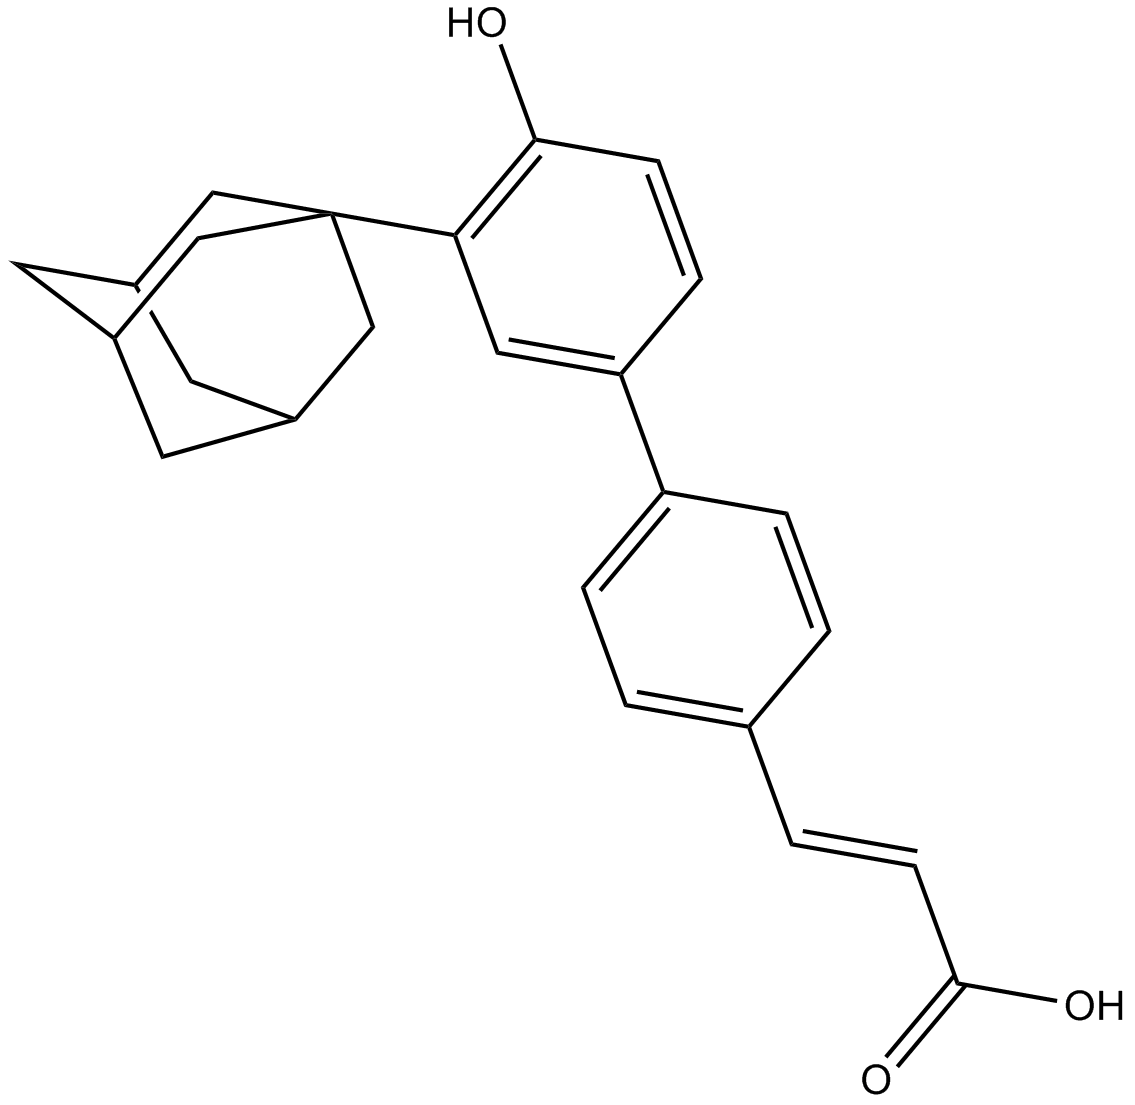 Adarotene